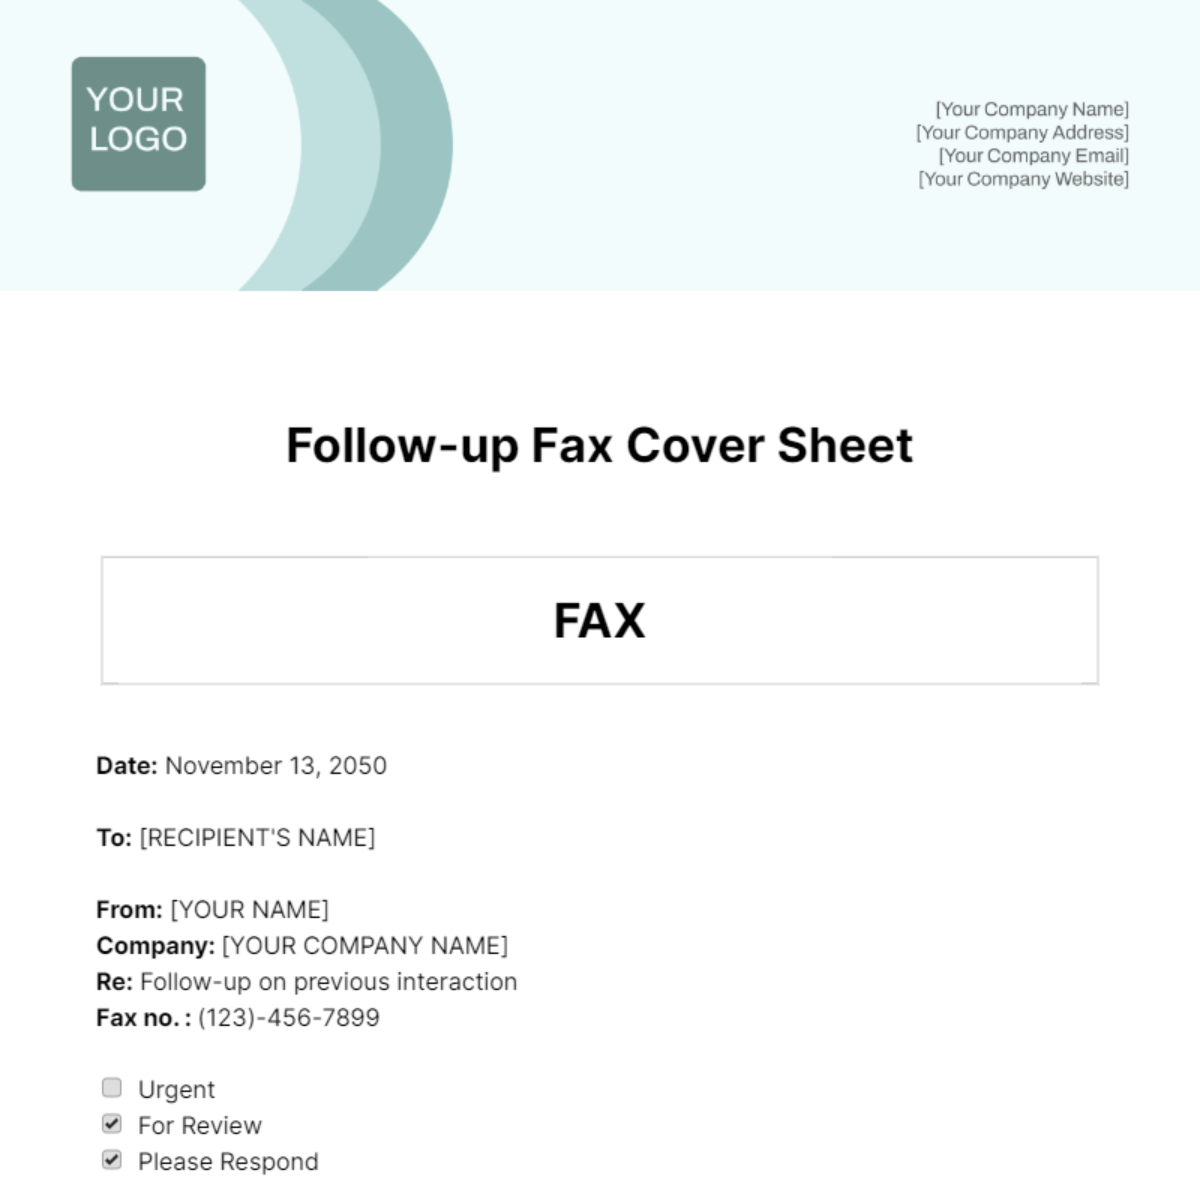 Follow-up Fax Cover Sheet Template